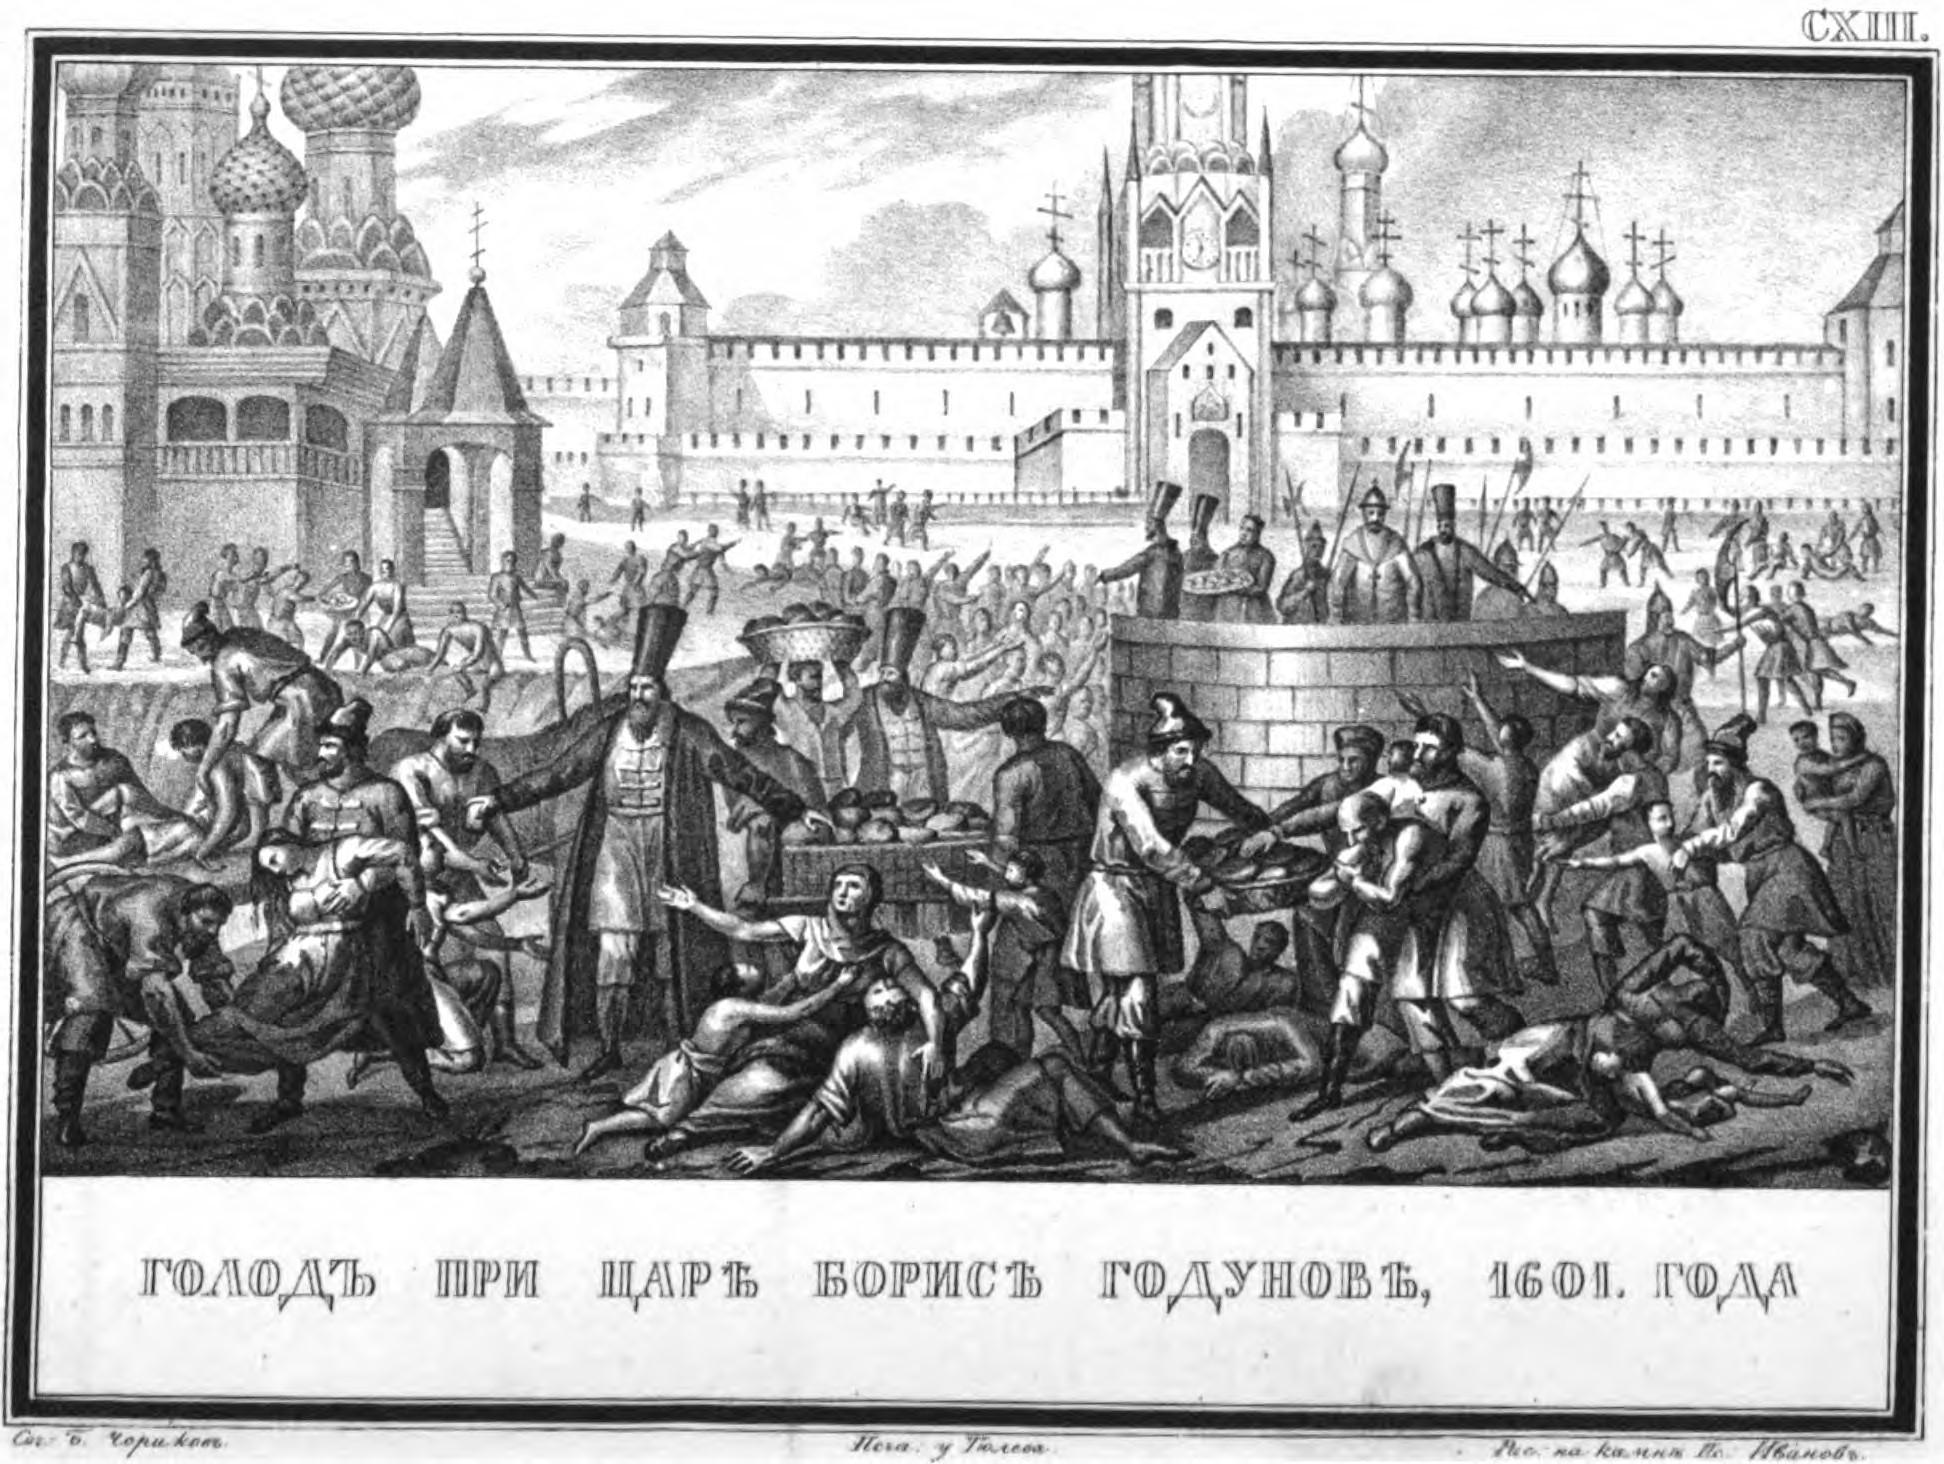 1603 год голод. Великий голод при Борисе Годунове. Великий голод (1601-1603). Голод в Москве при Борисе Годунове.